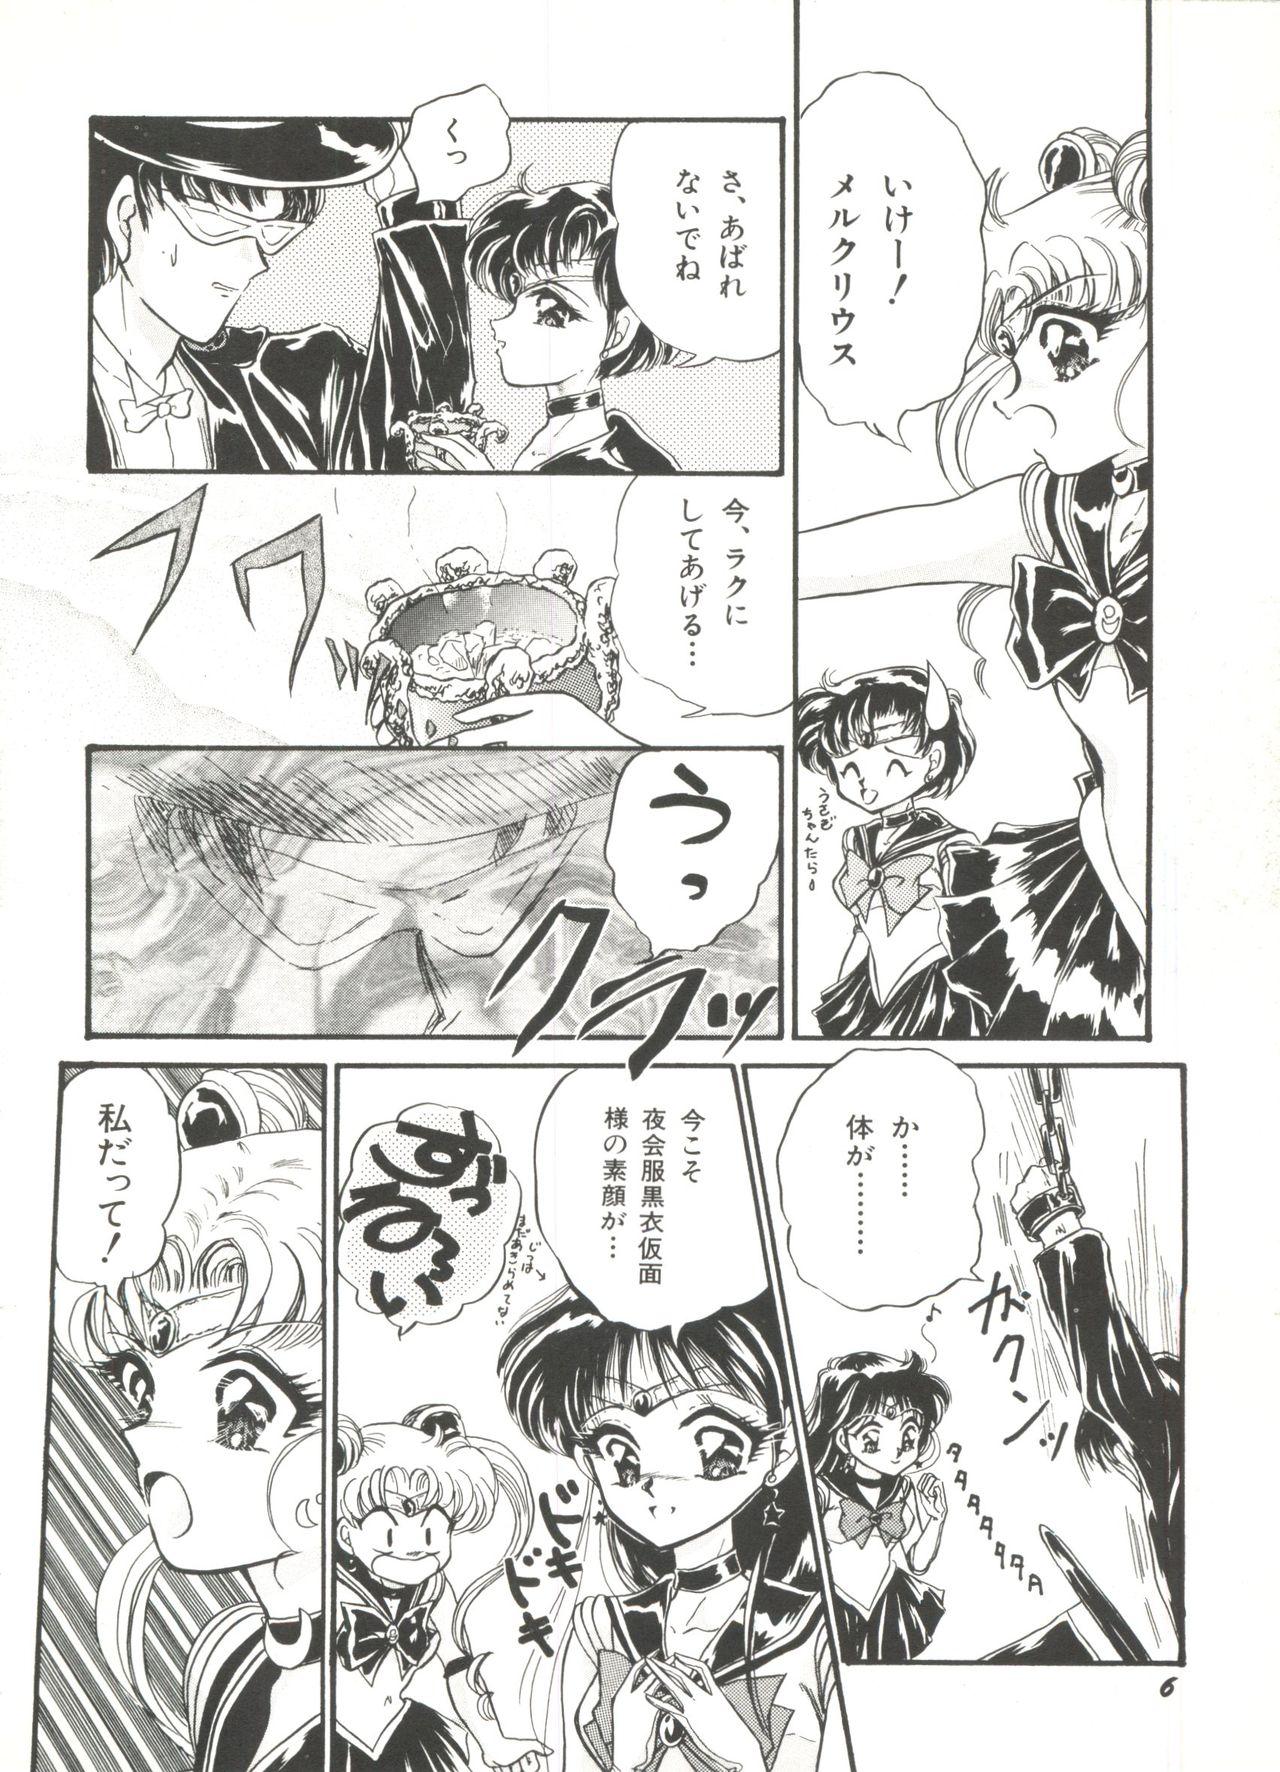 Eurosex Bishoujo Doujinshi Anthology 1 - Sailor moon Fatal fury Dykes - Page 8